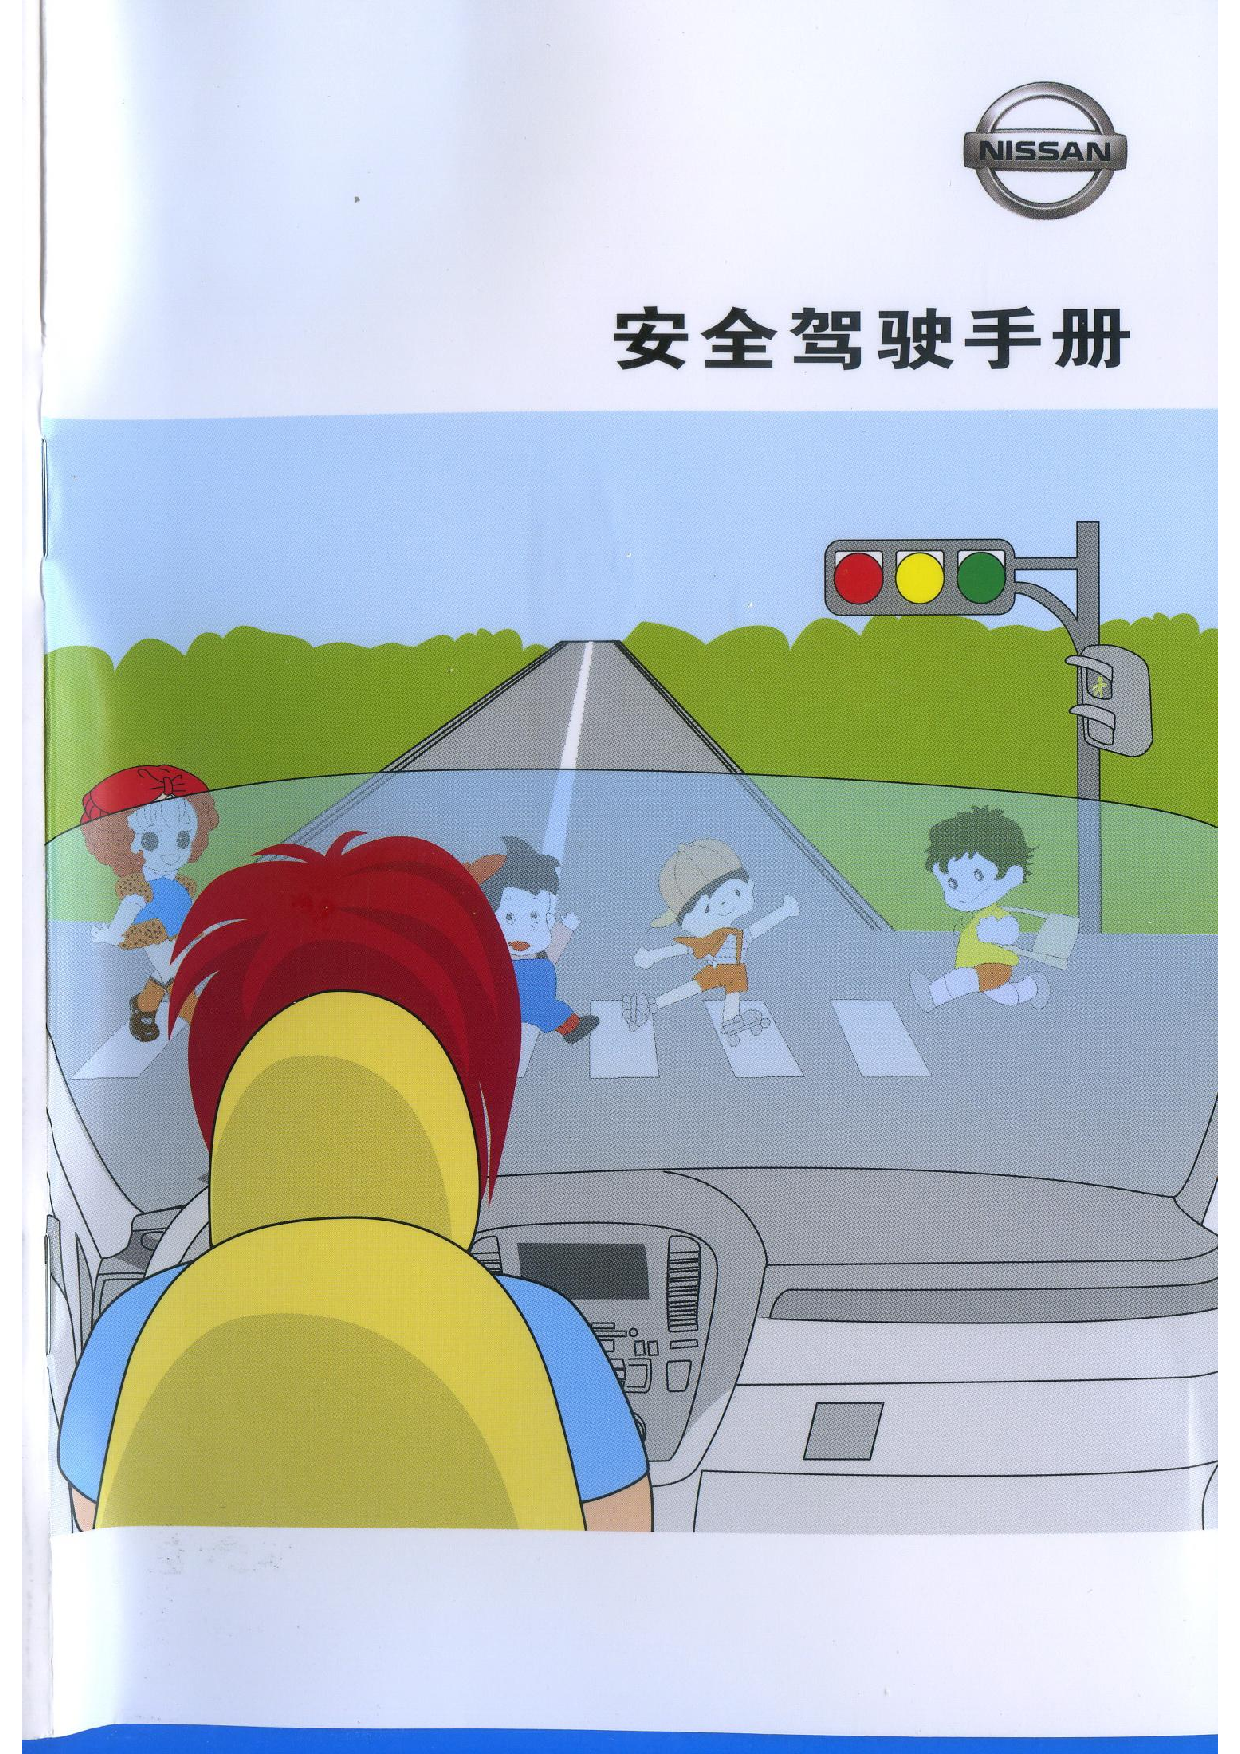 日产 Nissan 安全驾驶 2011 用户手册 封面